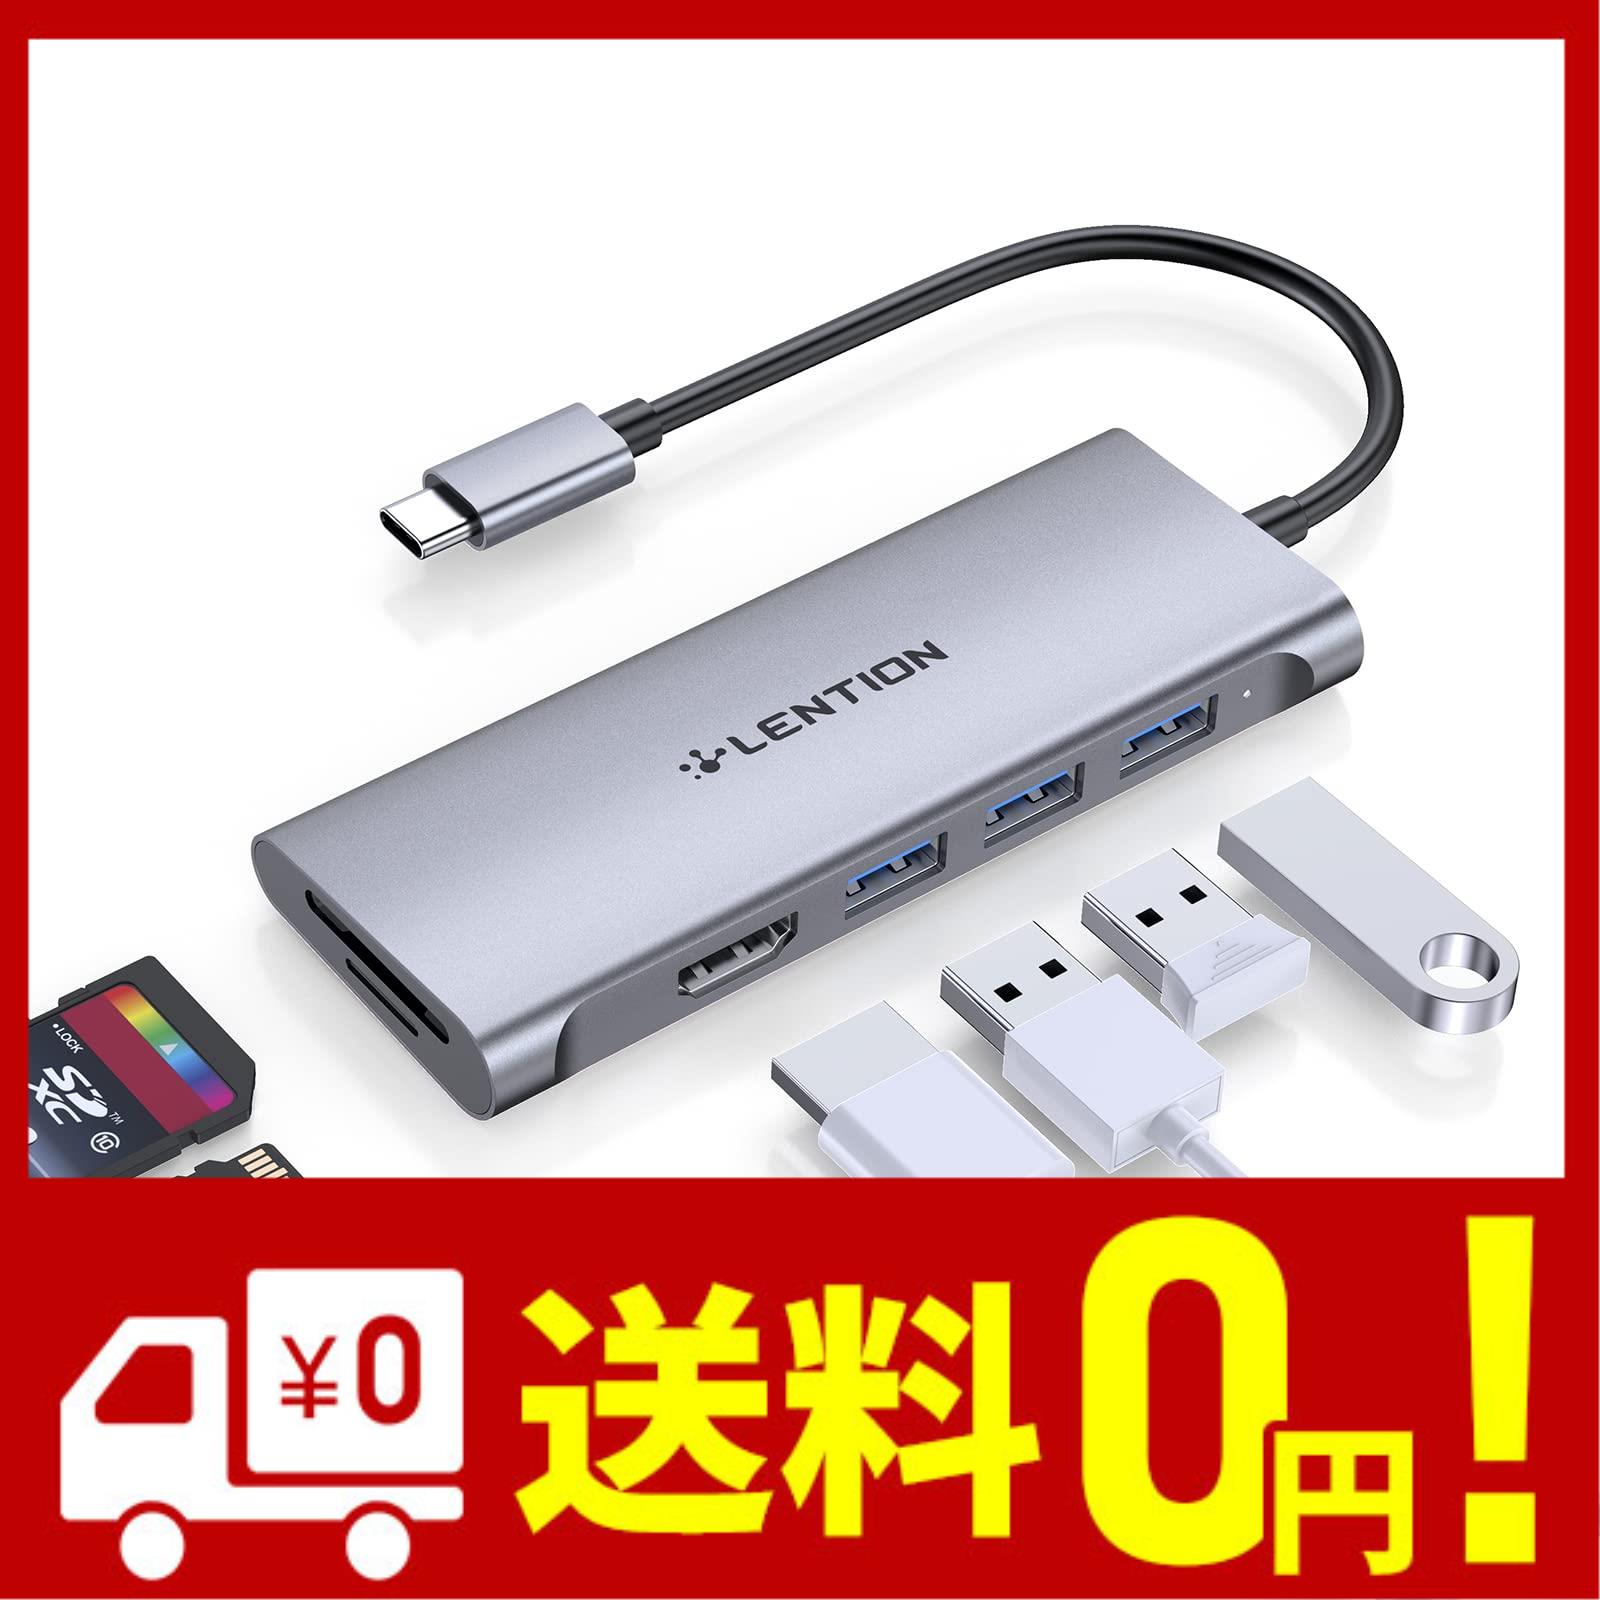 LENTION 6in1 USB C ハブ CB-C34 4K HDMI Micro SD SDカードリーダー UHS-I対応 USB3.0 3 USB Type C タイプc 変換 アダプタ MacBook